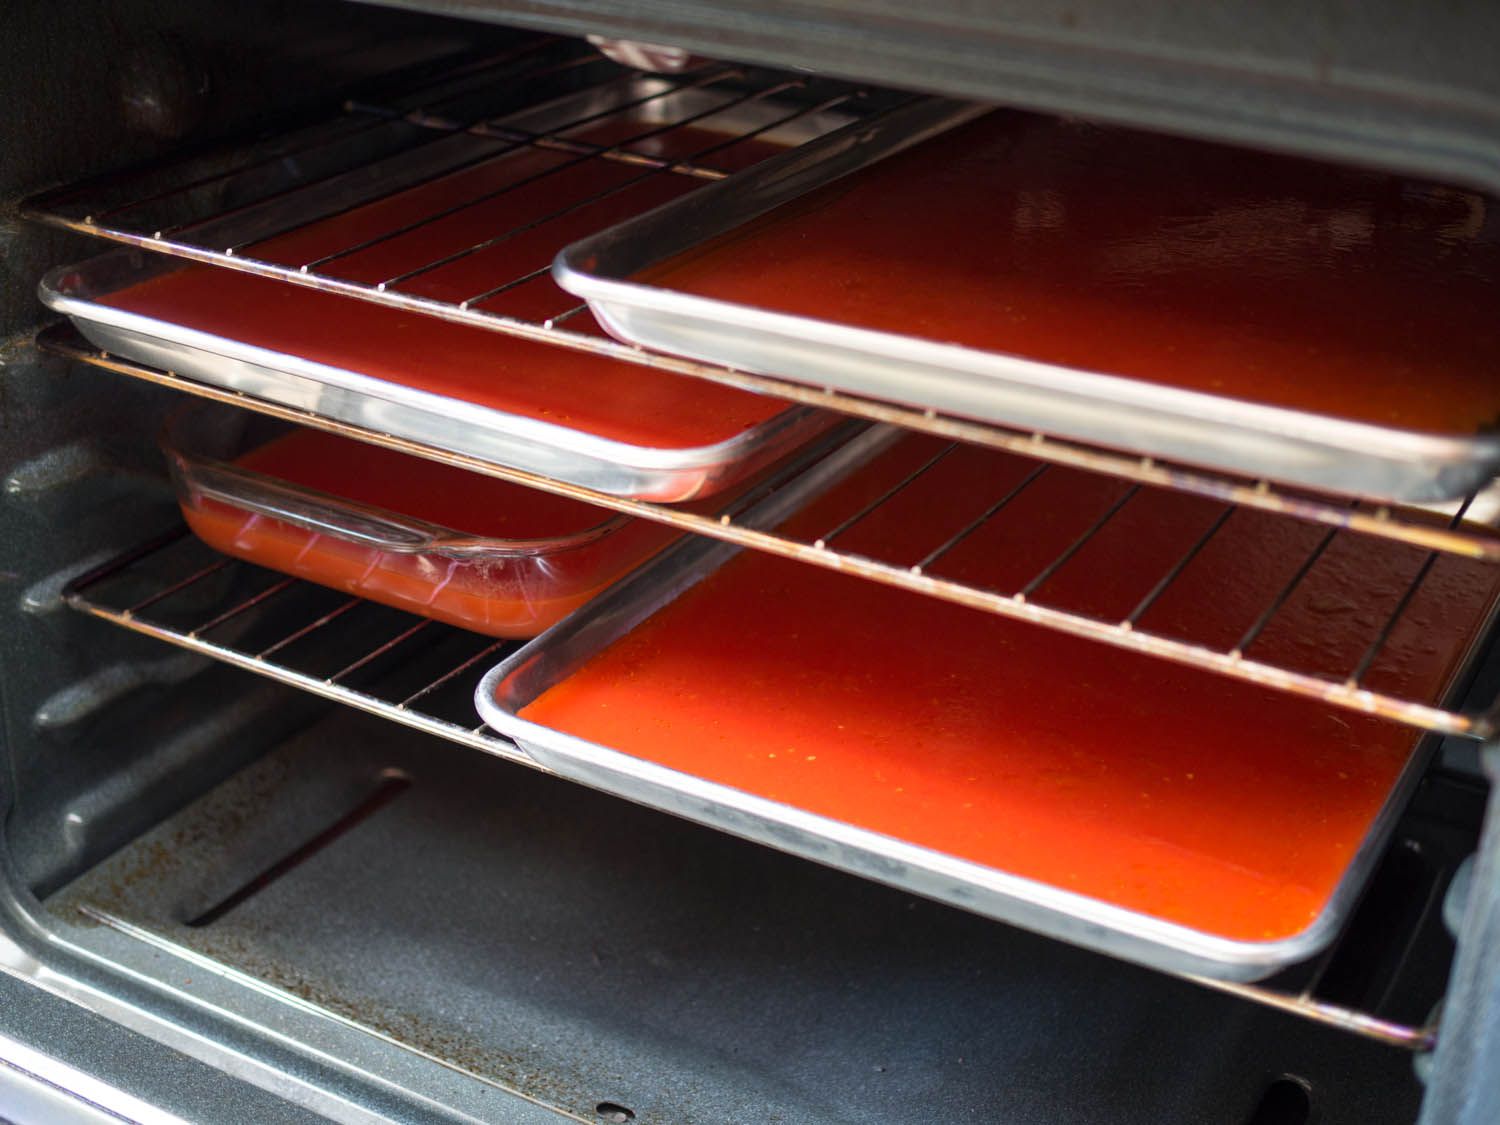 在烤箱的架子上放几个带边的烤盘和平底锅，里面装满了番茄水。